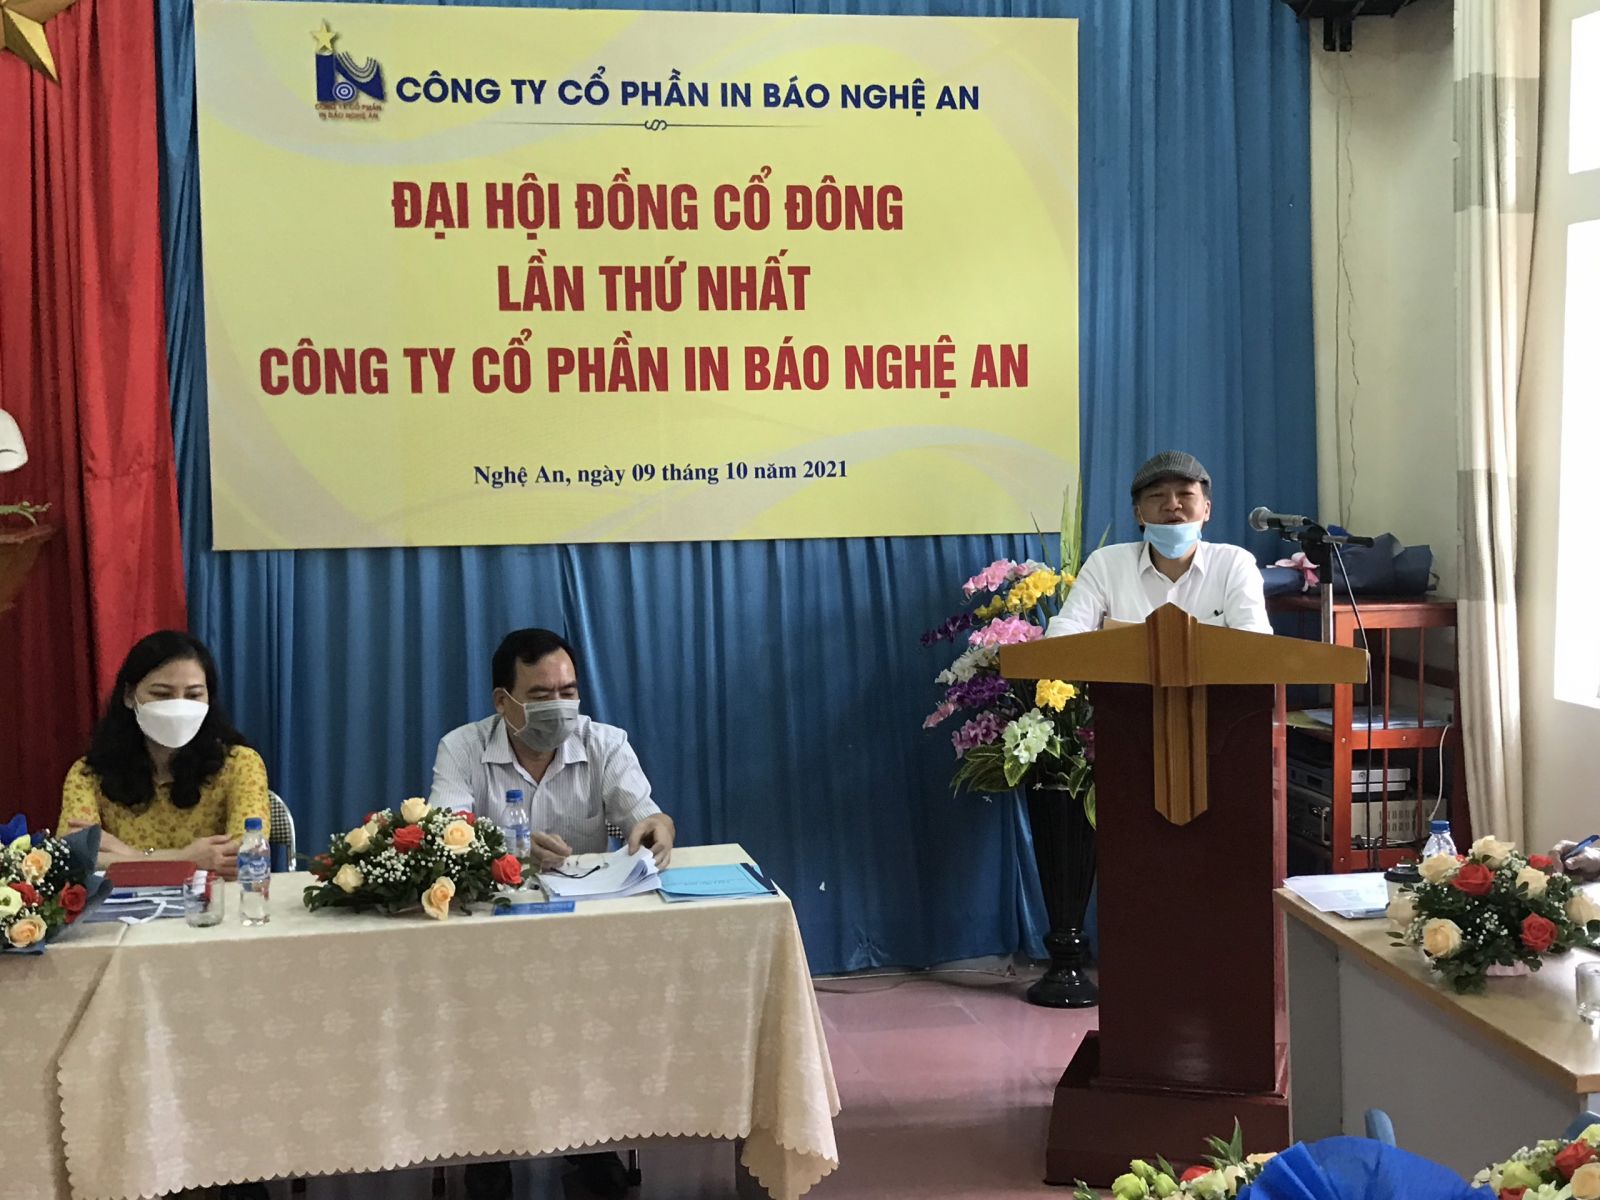 Tân chủ tịch HĐQT Công ty cổ phần In báo Nghệ An phát biểu trước Đại hội